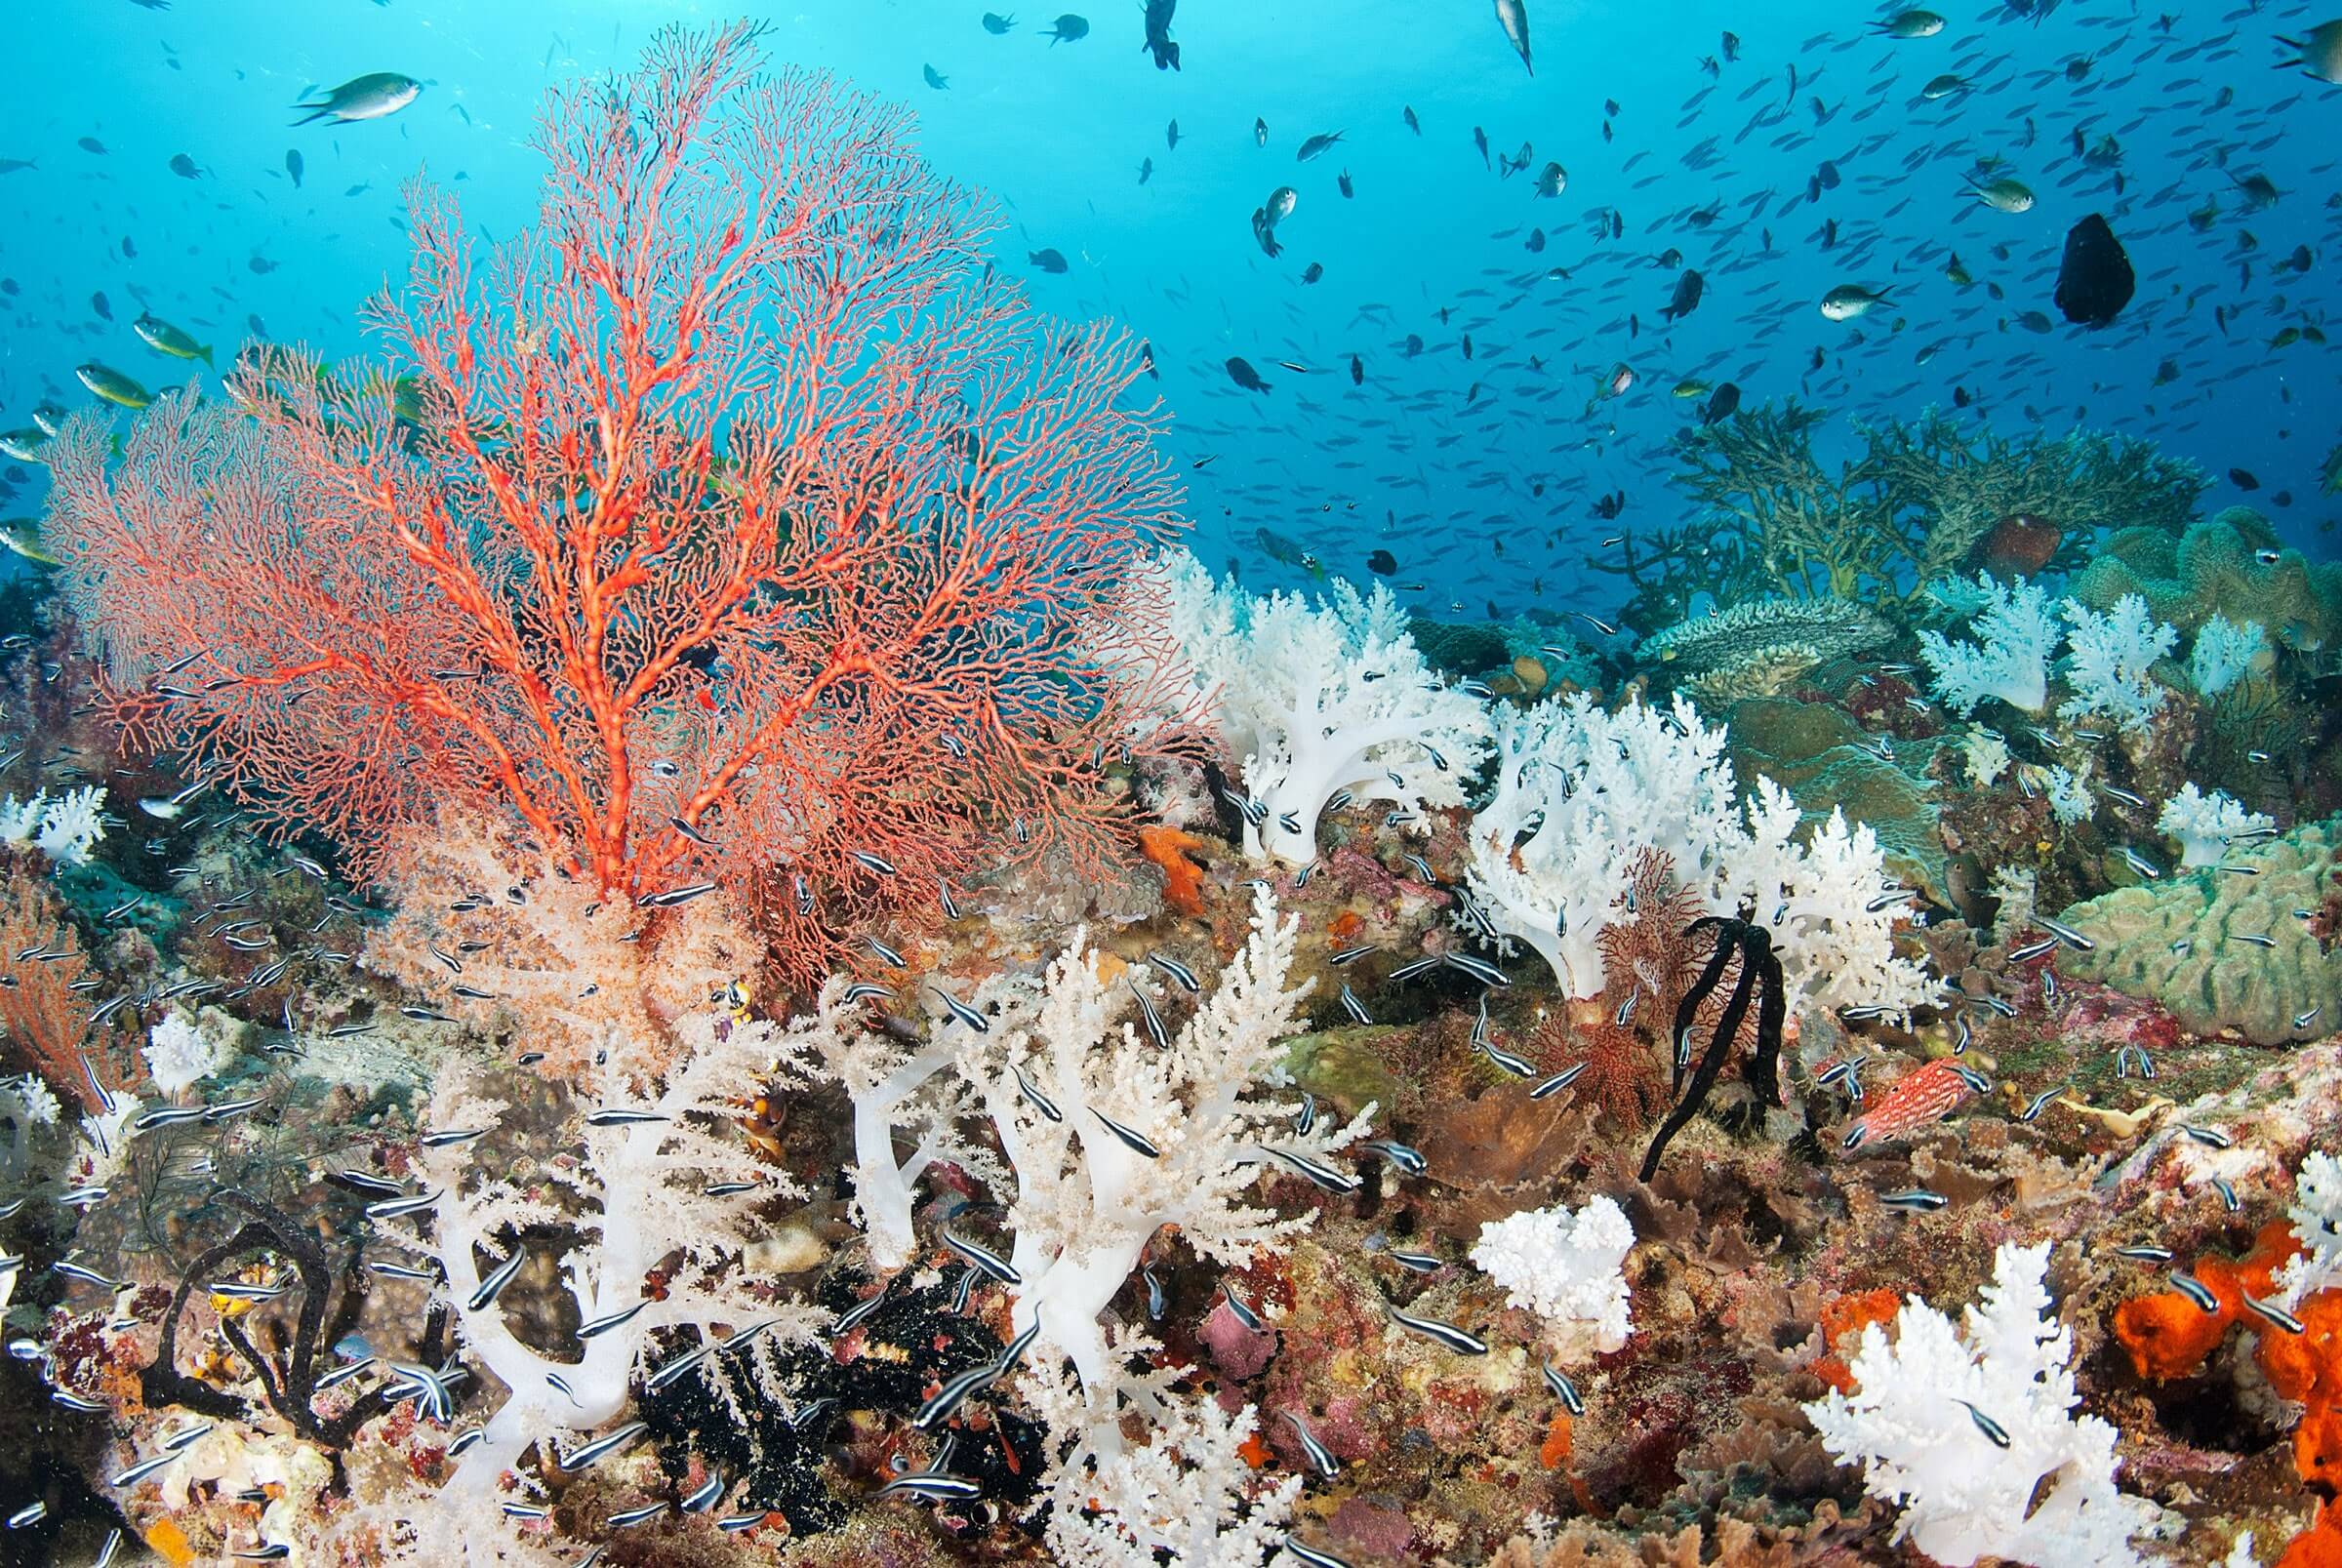 Индийский океан форма. Атлантический океан коралловый риф. Ярусность кораллового рифа. Морские водоросли на рифе. Коралл циатофиллум.